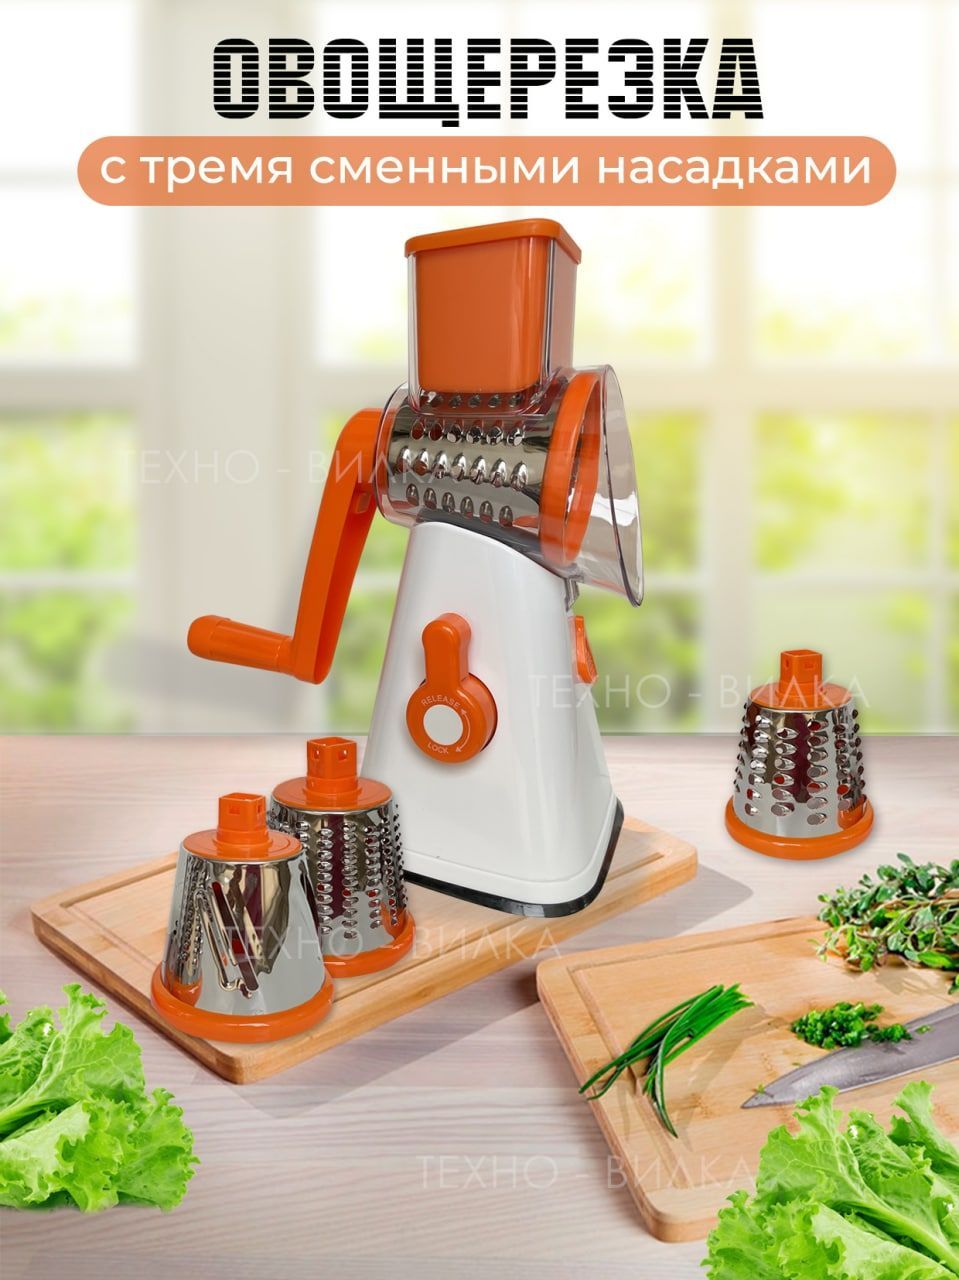 Измельчители и терки для овощей купить в Минске